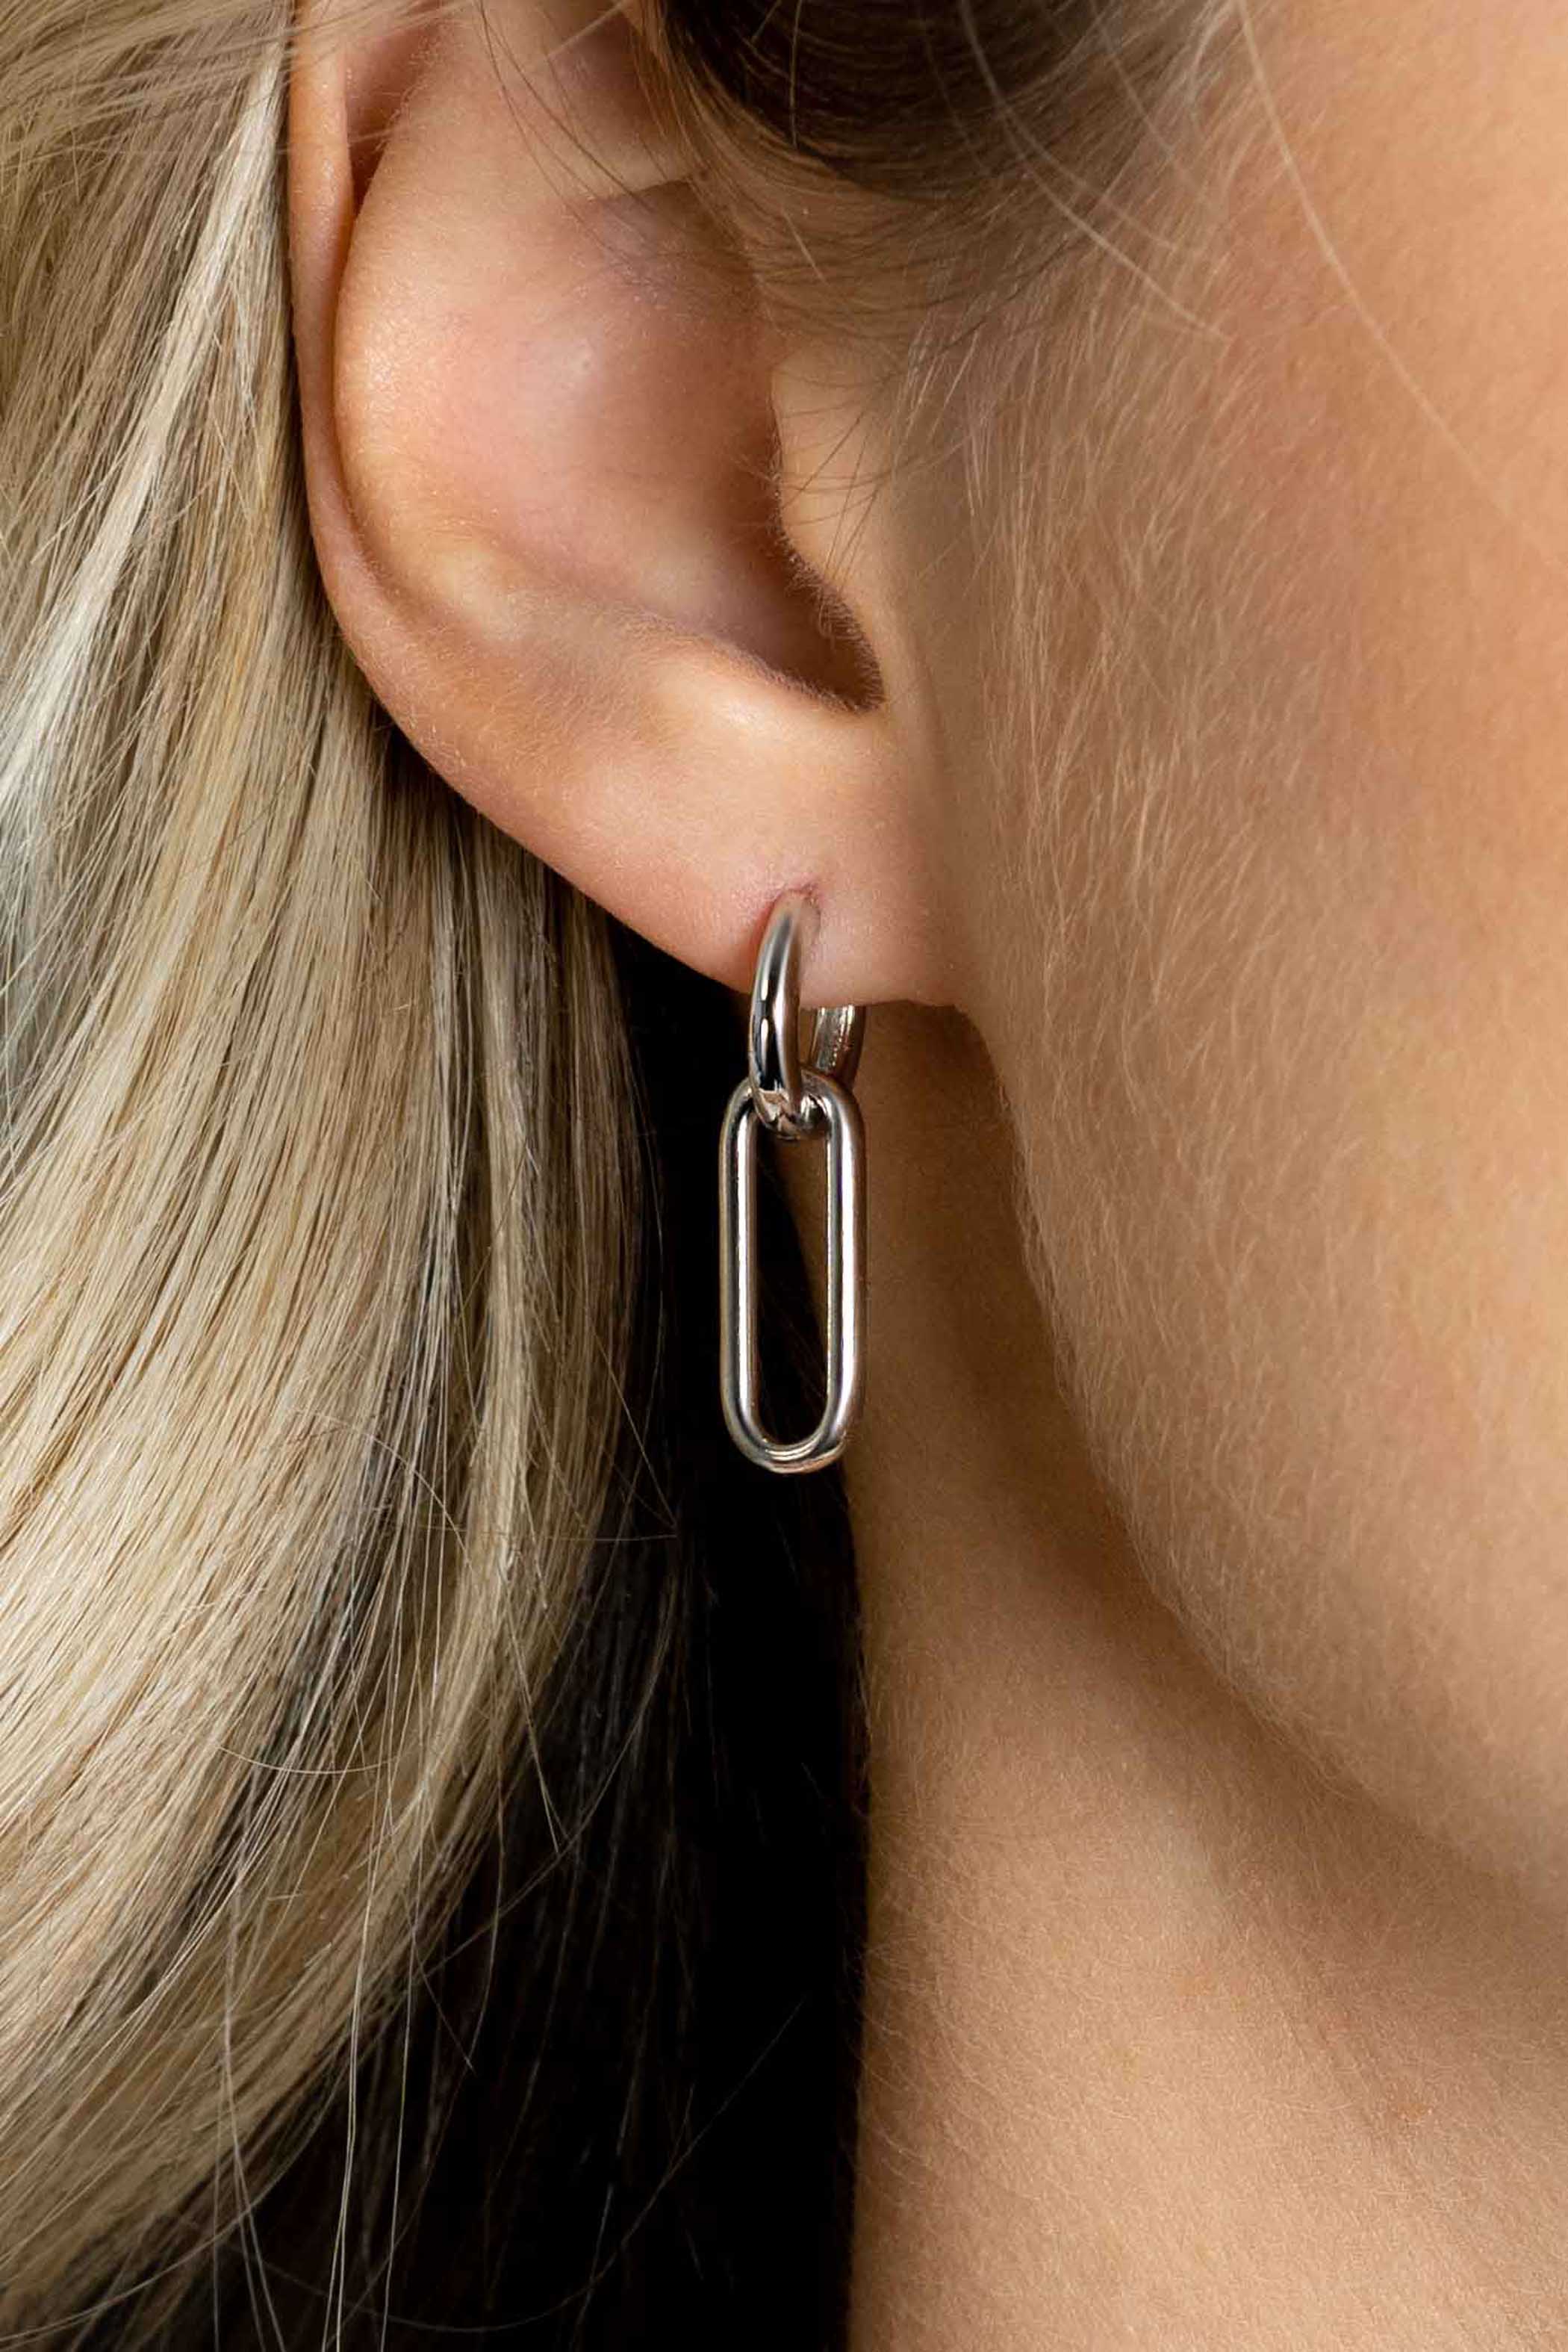 20mm ZINZI Sterling Silver Earrings Pendants Open Oval ZICH2415 (excl. hoop earrings)